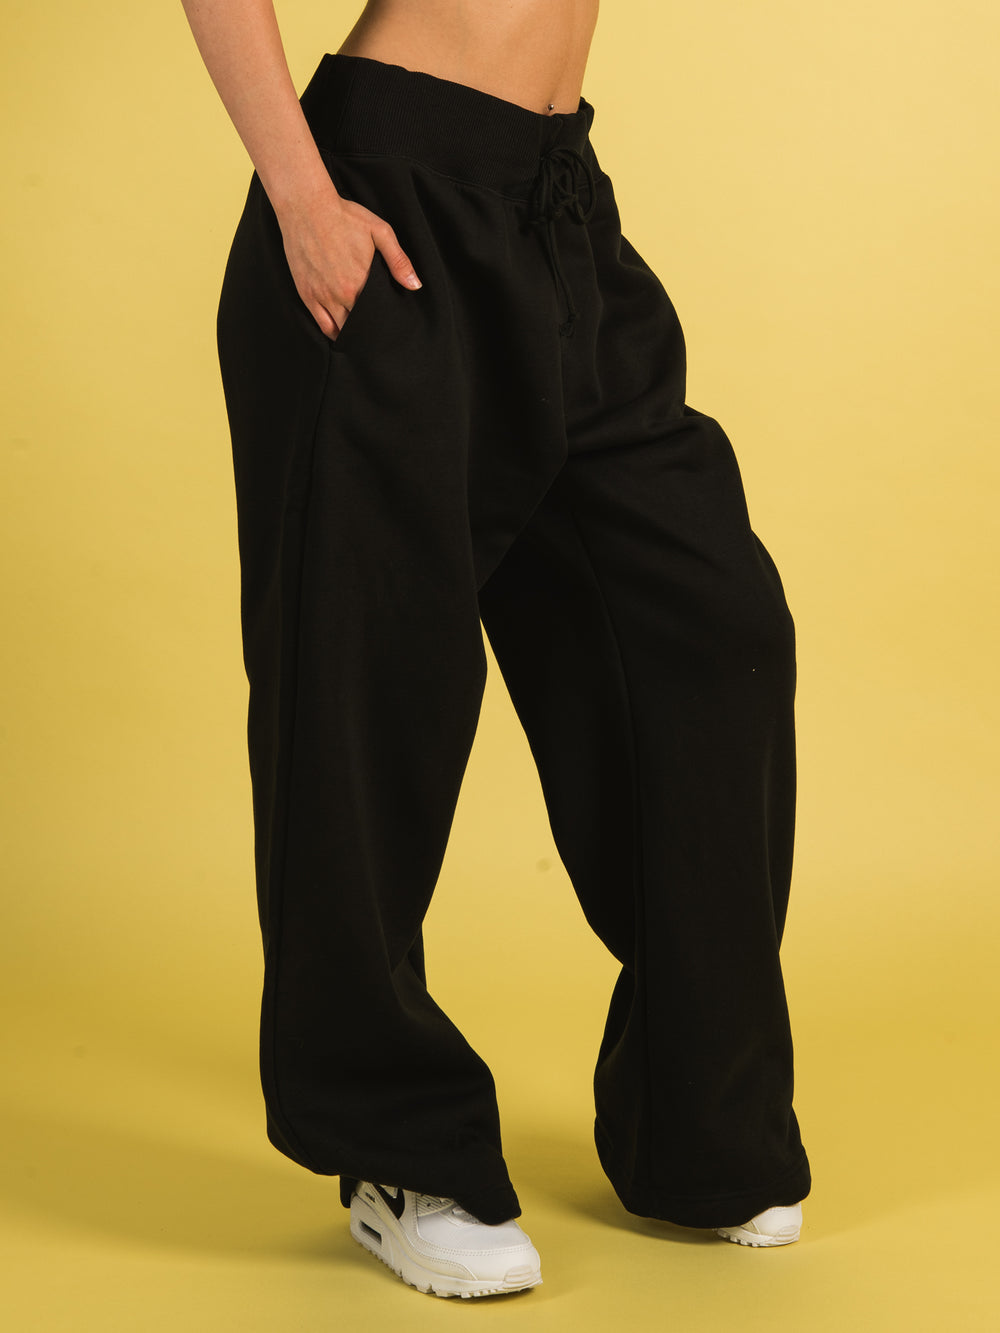 NIKE Sportswear Phoenix Womens Wide Leg Fleece Sweatpants - OFF WHITE